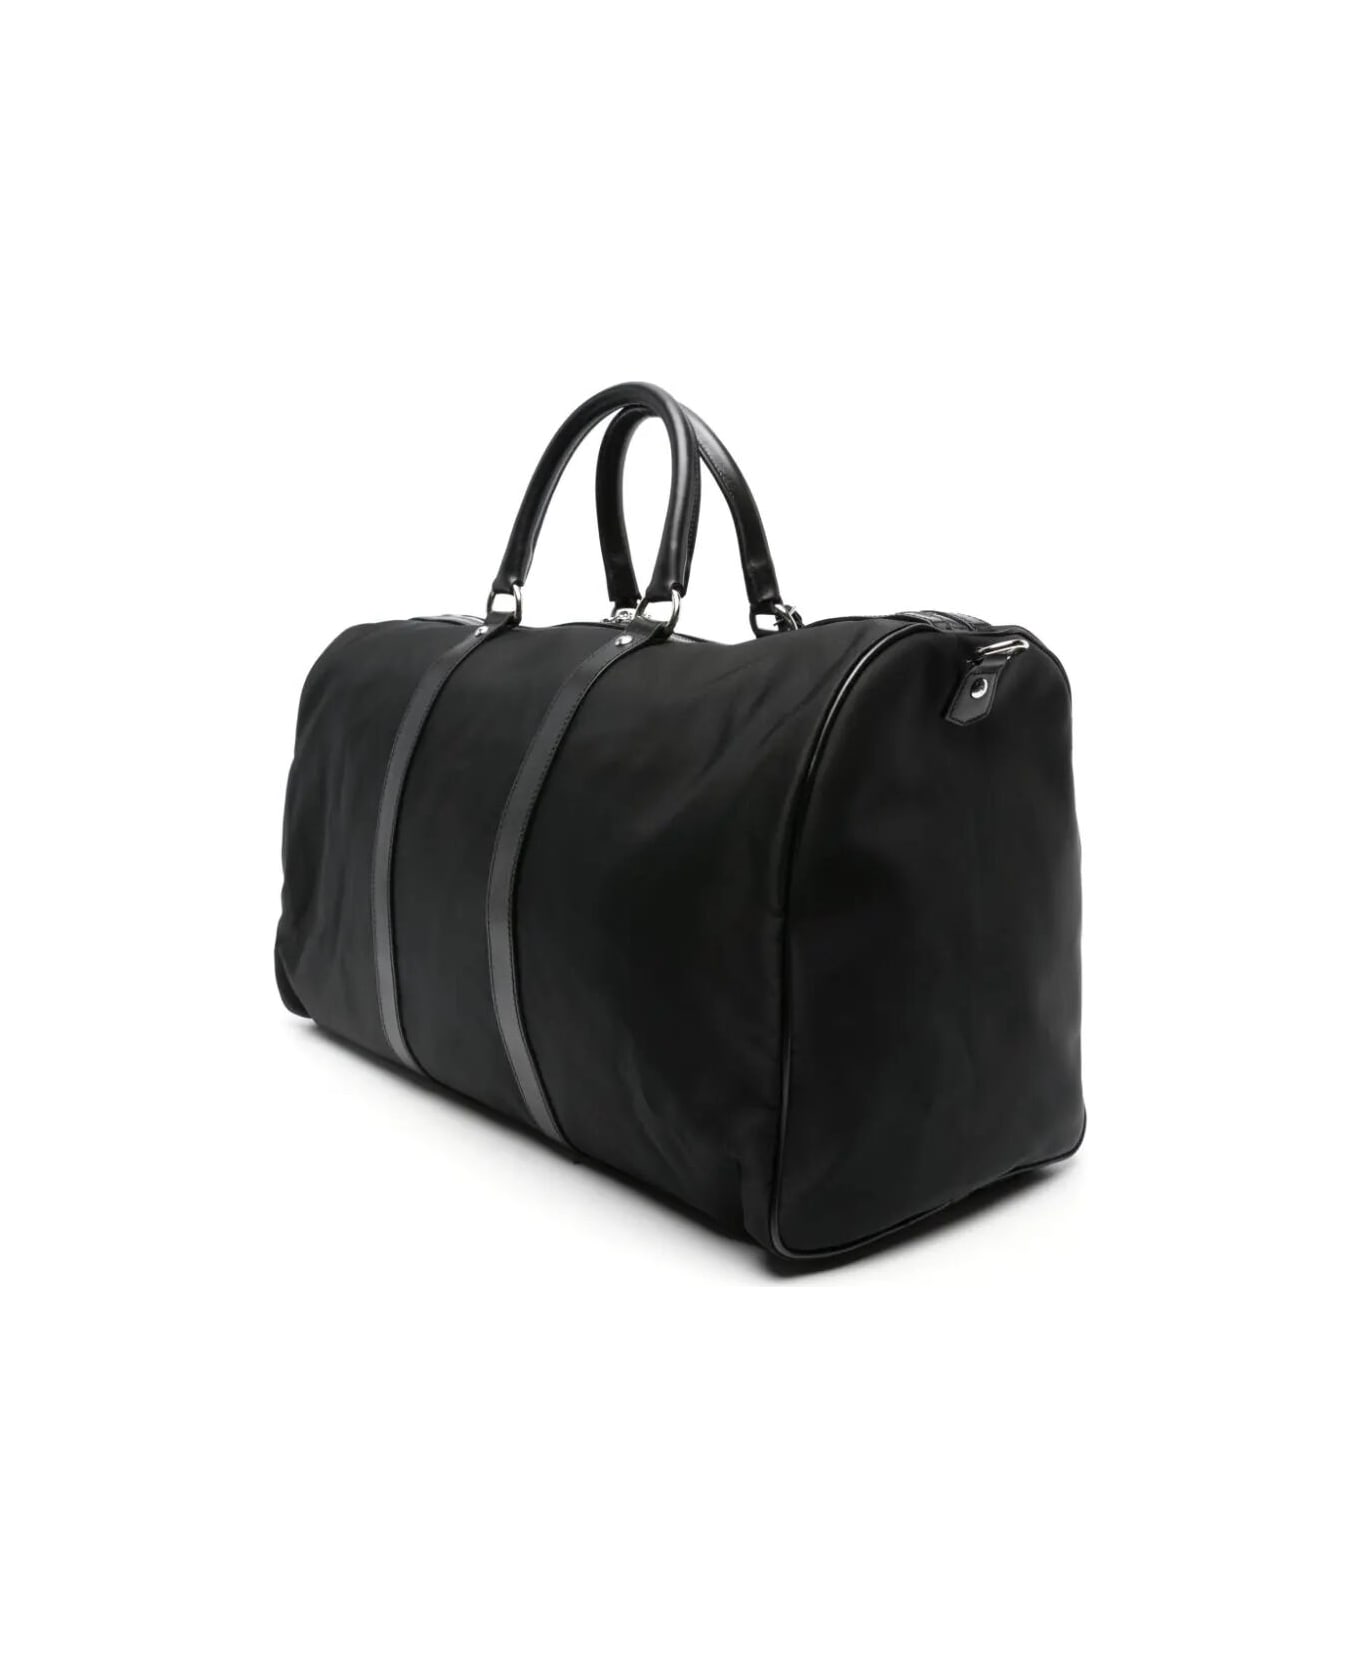 Kiton Luggage - Black トラベルバッグ